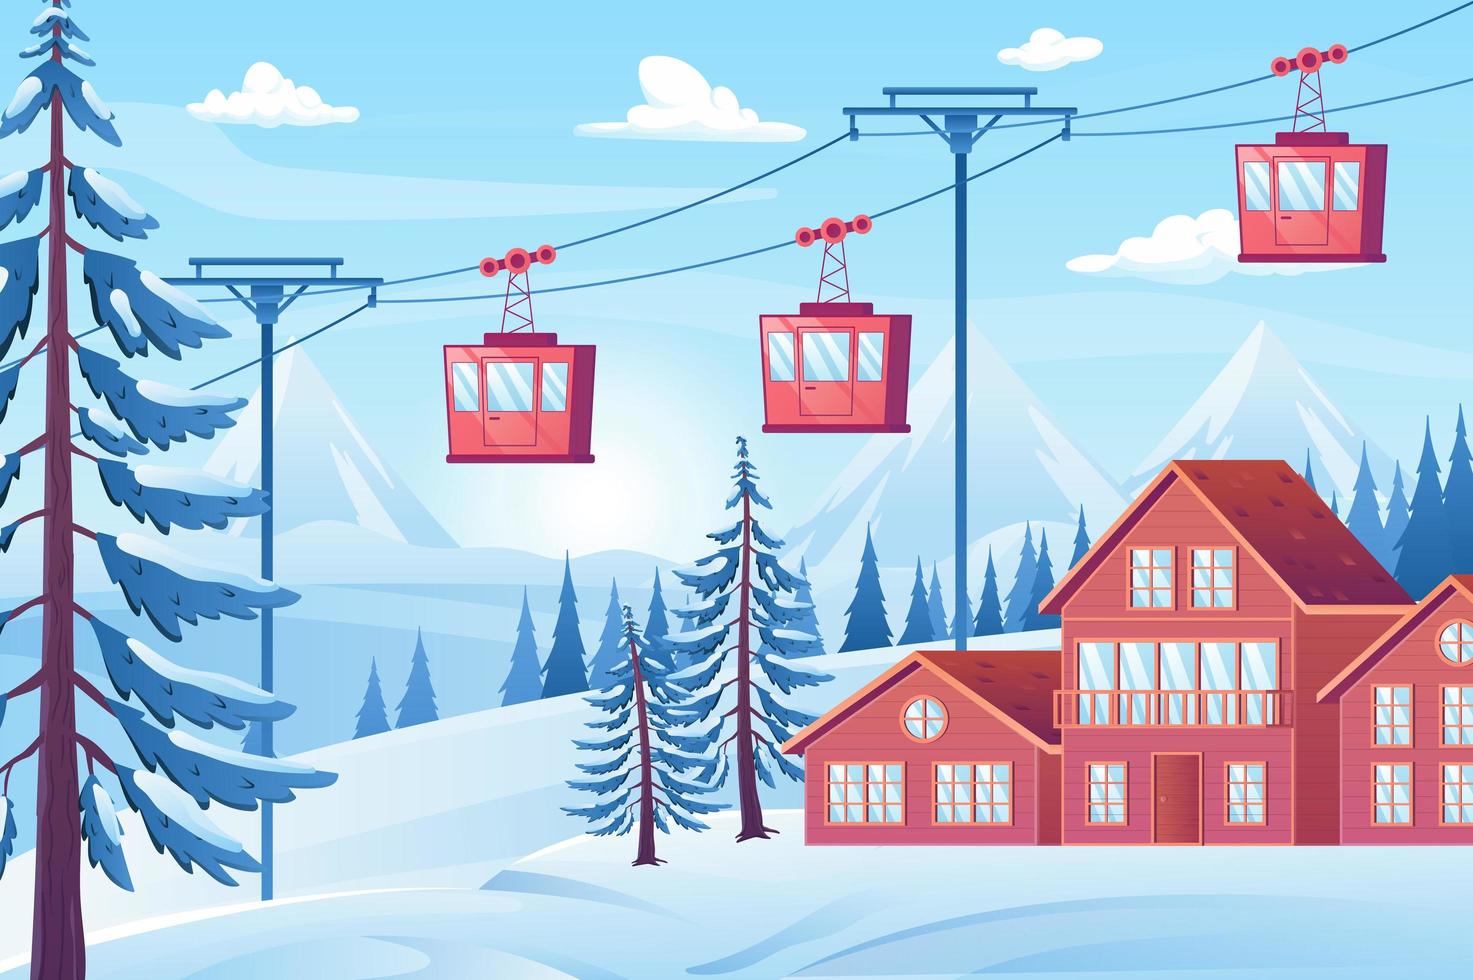 estação de esqui com conceito de vista do teleférico em design plano dos desenhos animados. casas de férias, floresta de inverno com abetos, montanhas nevadas, cabines de teleférico de elevação. cenário natural. ilustração vetorial fundo vetor